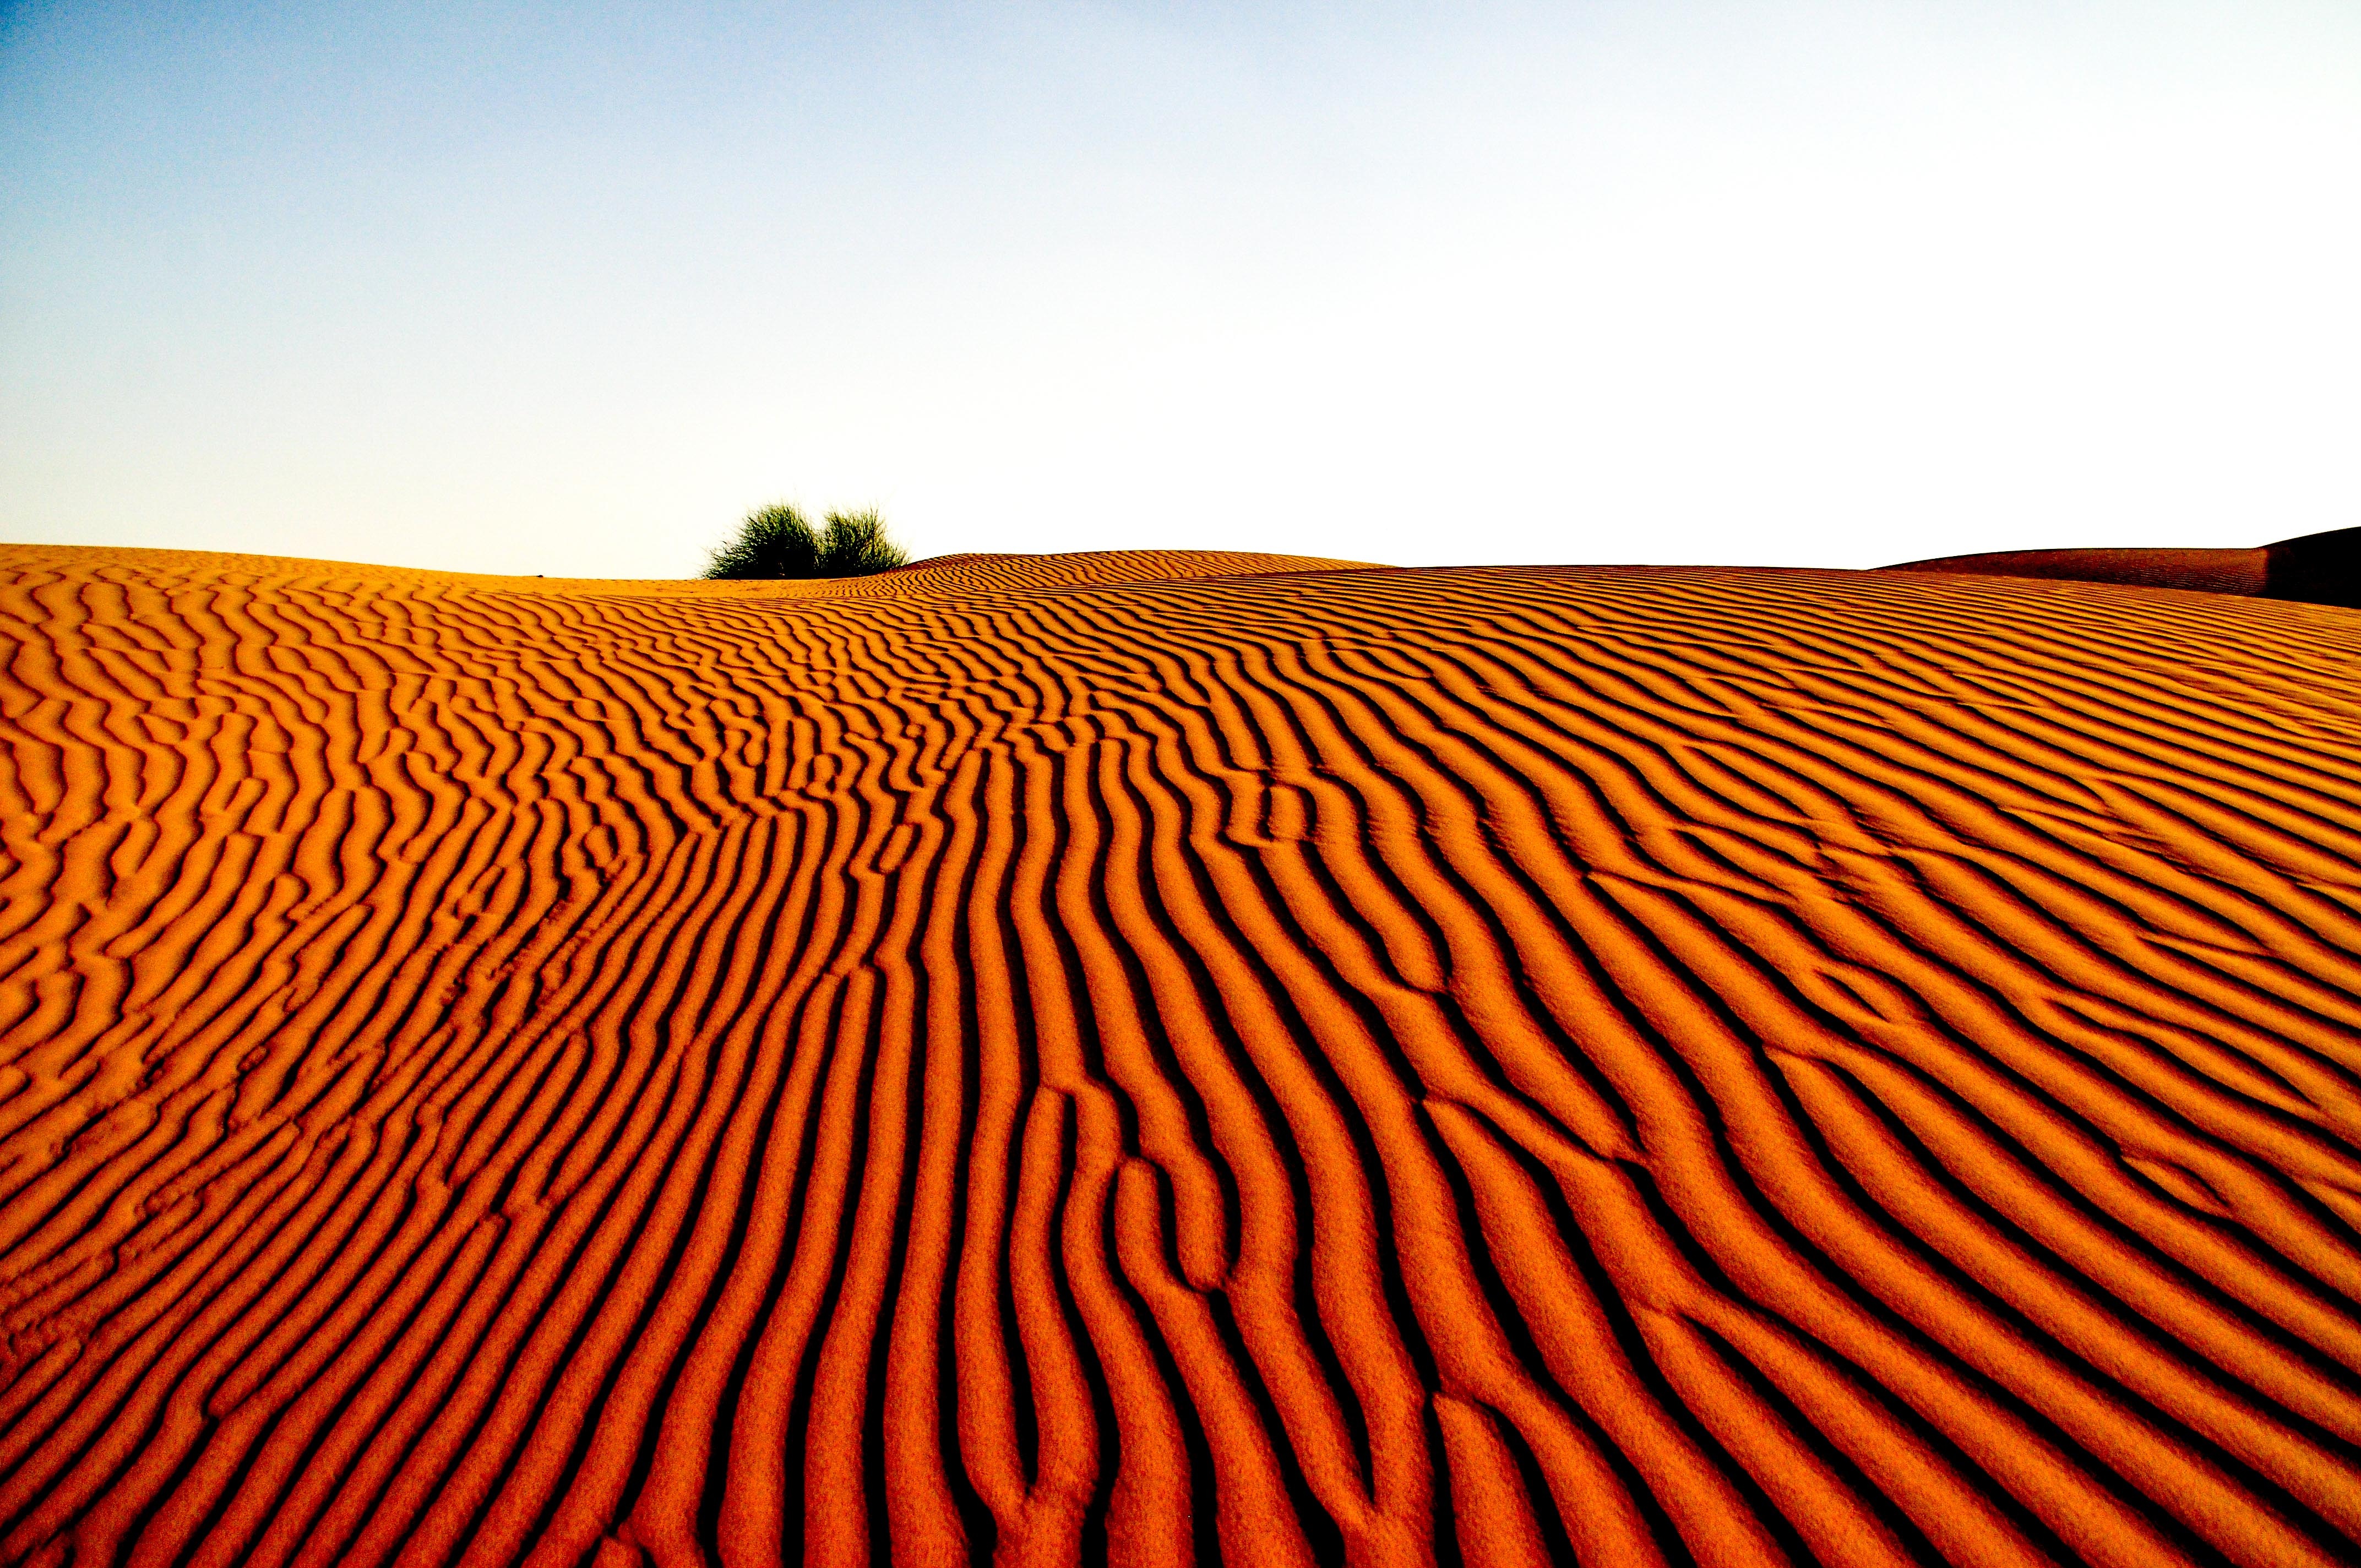 风在沙漠的沙地上画出美丽的浮雕